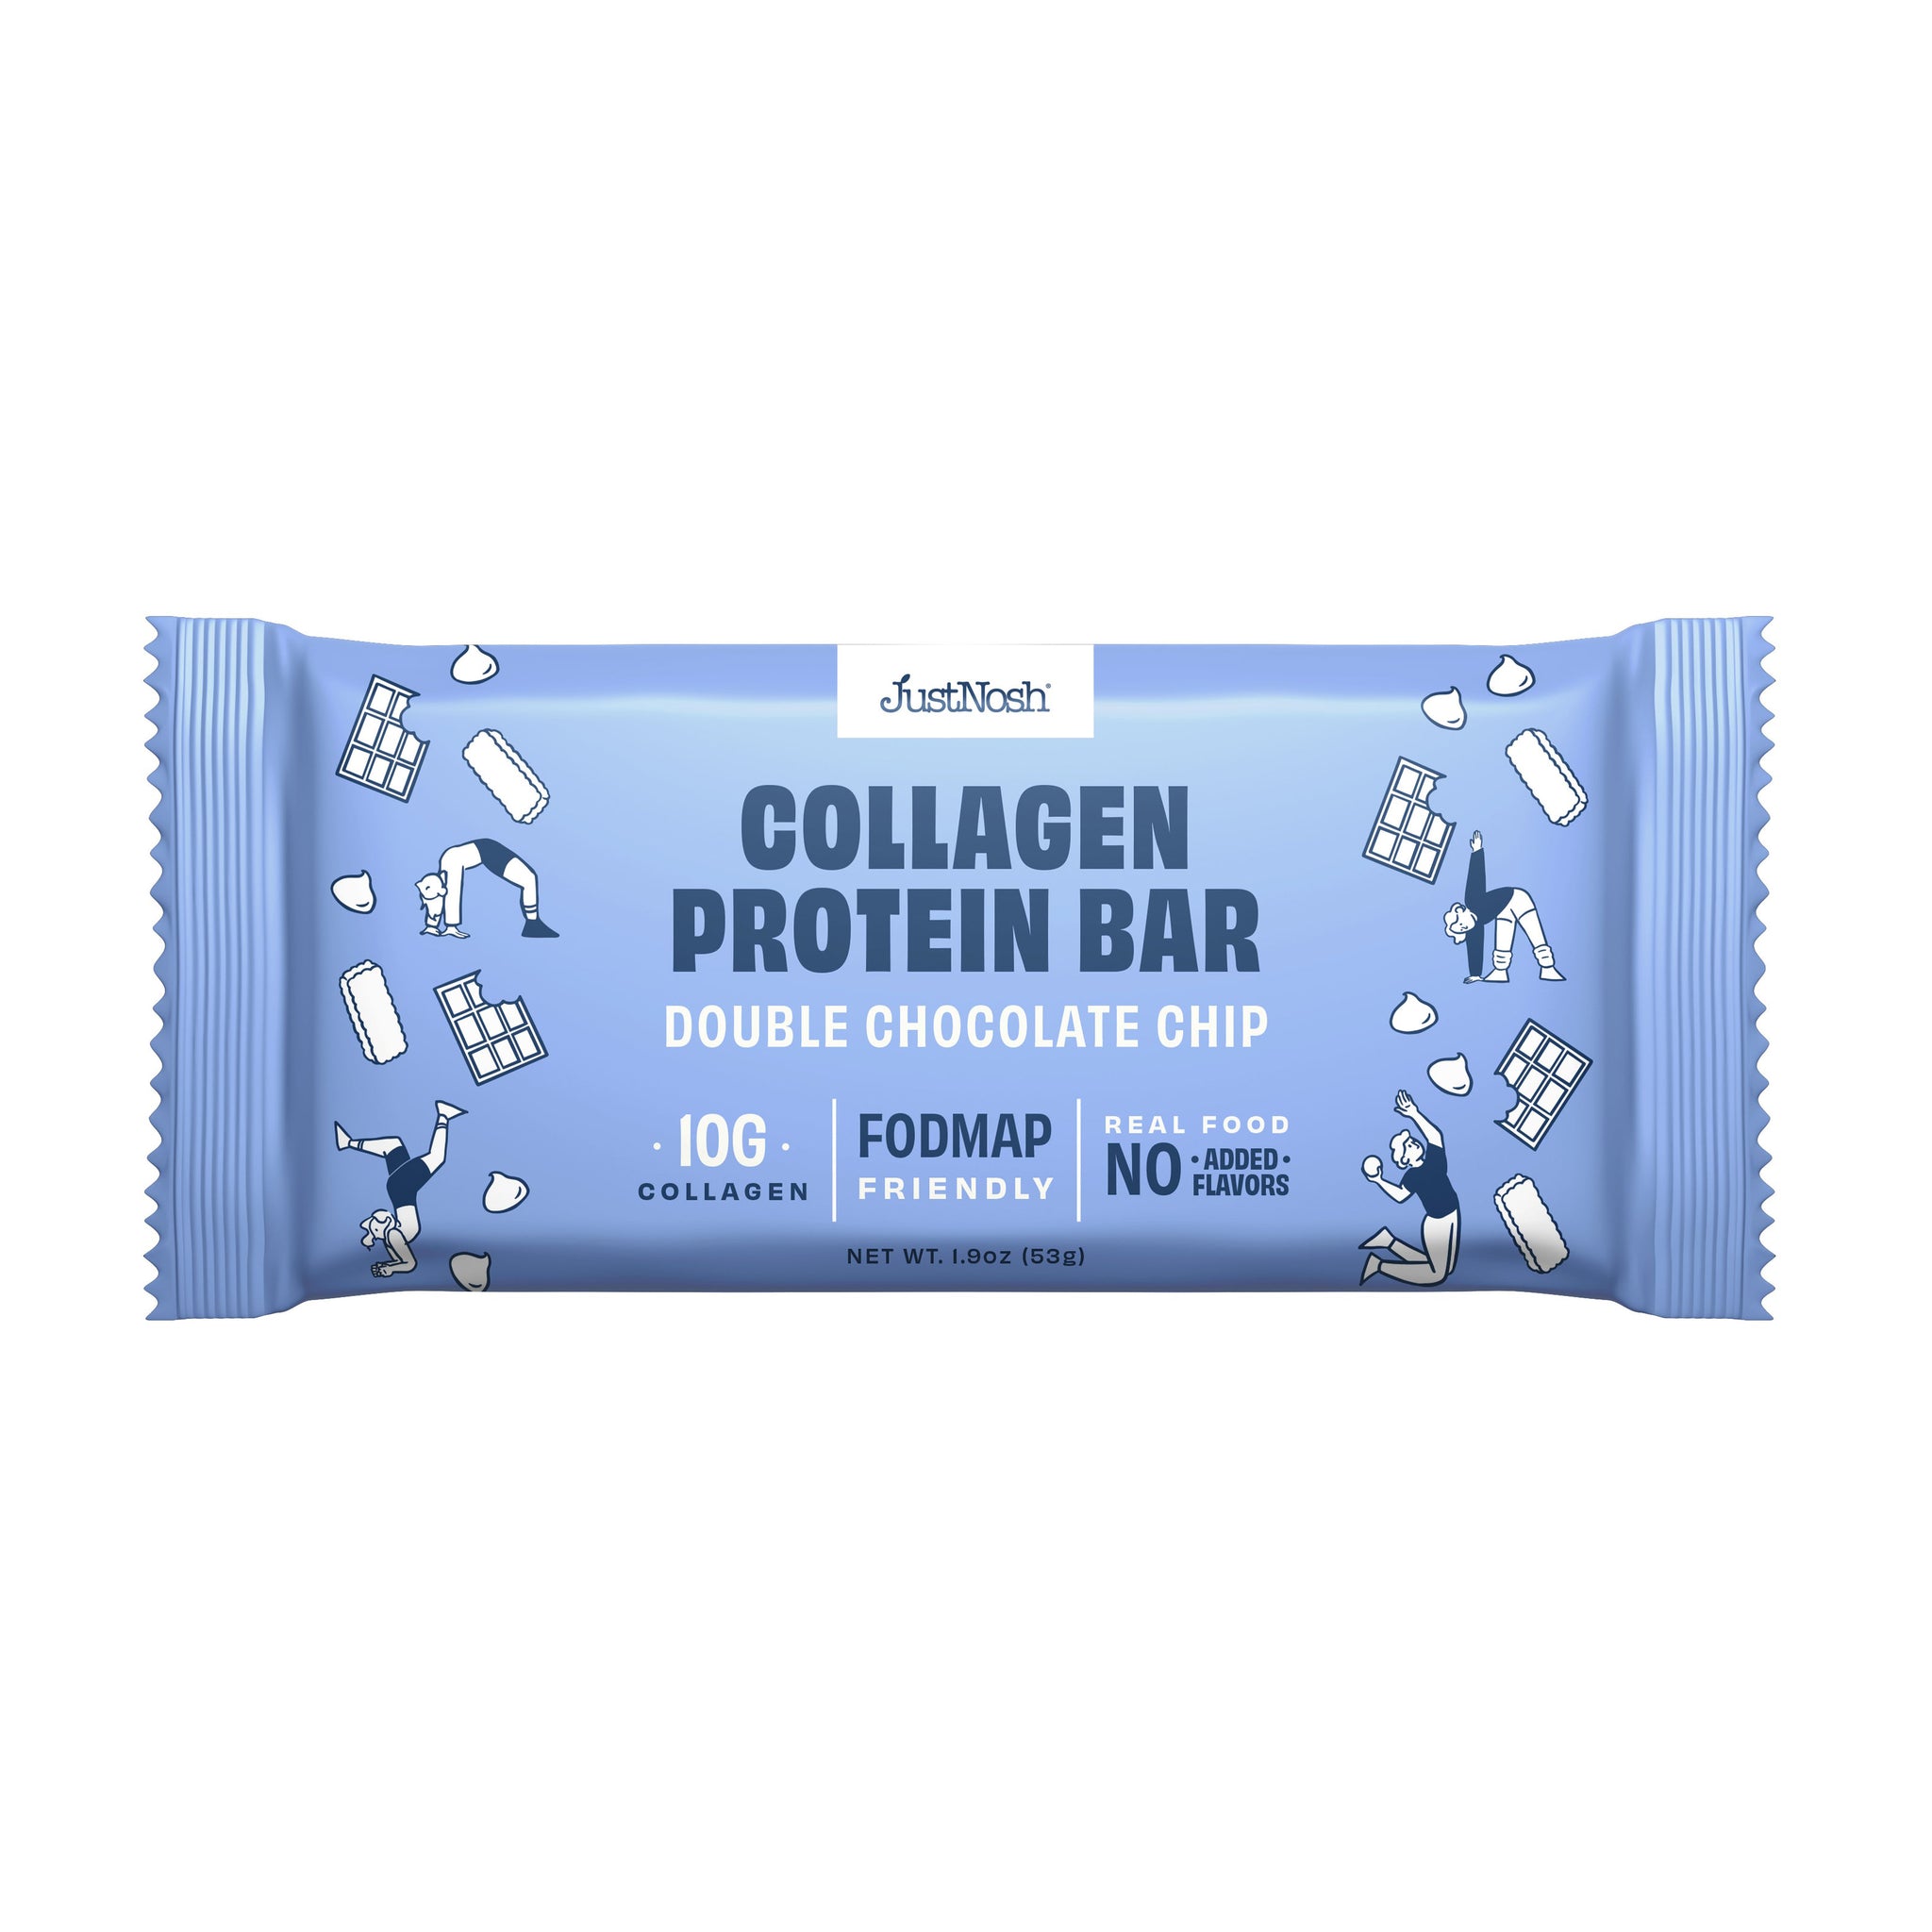 JustNosh Collagen Protein Bar